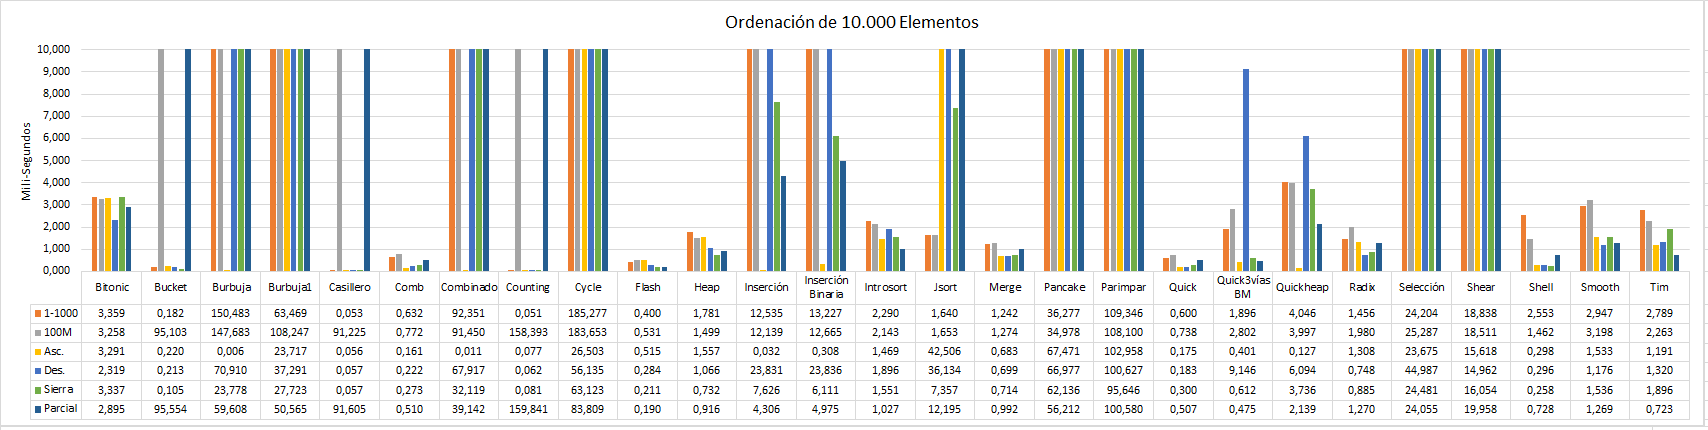 Rendimientos ordenación de 10.000 elementos